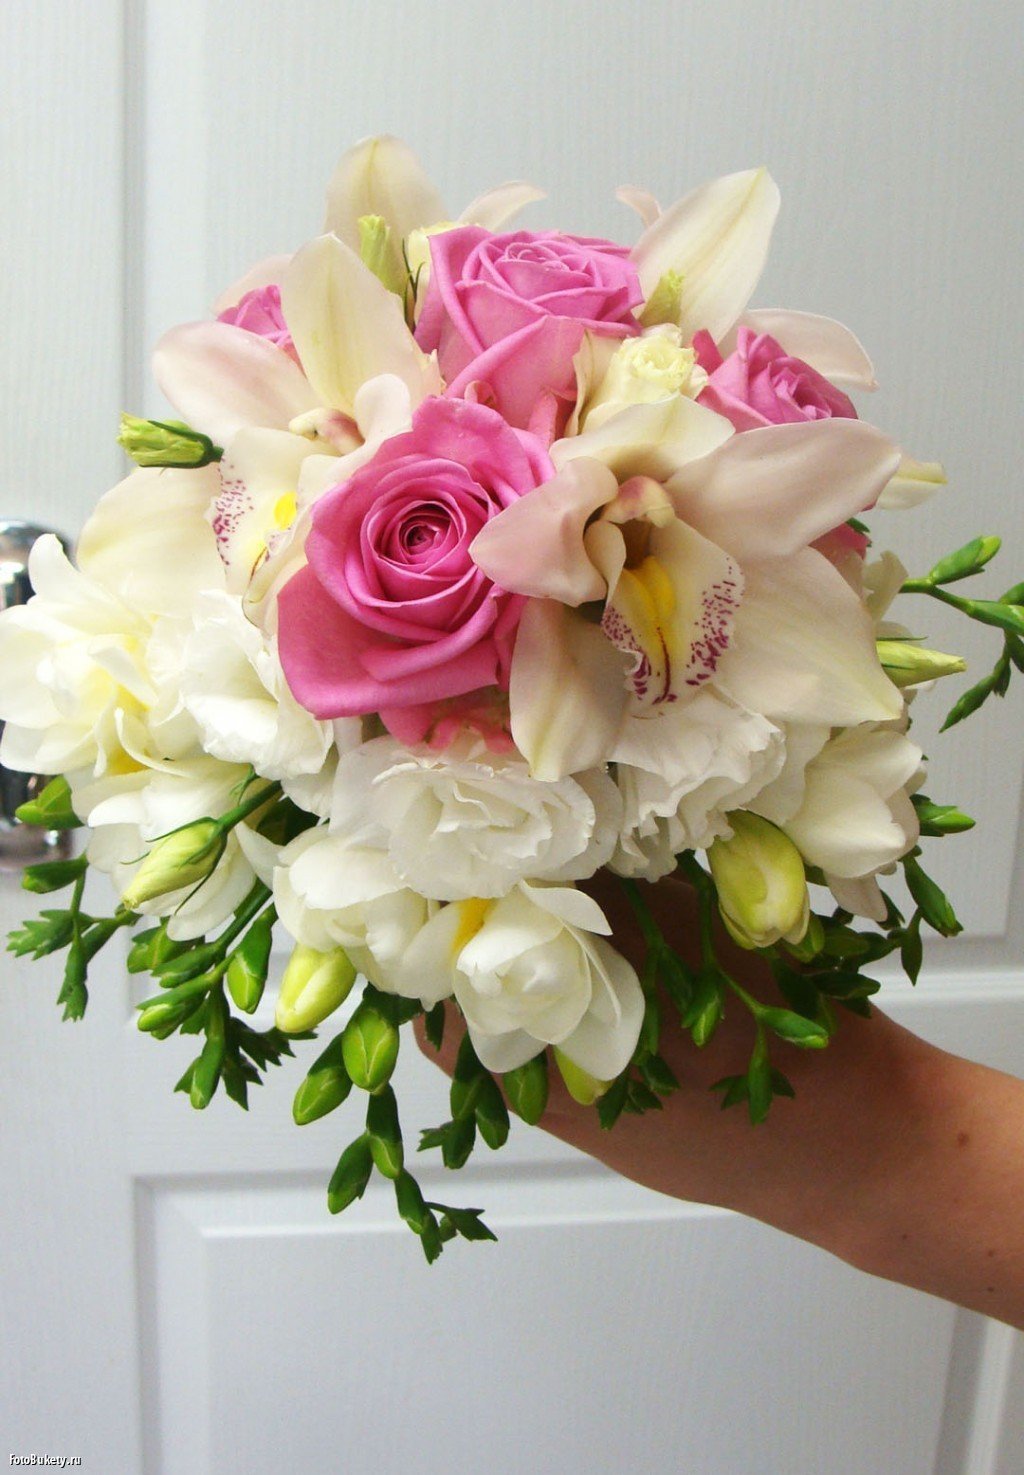 Фрезия цветок свадебный букет